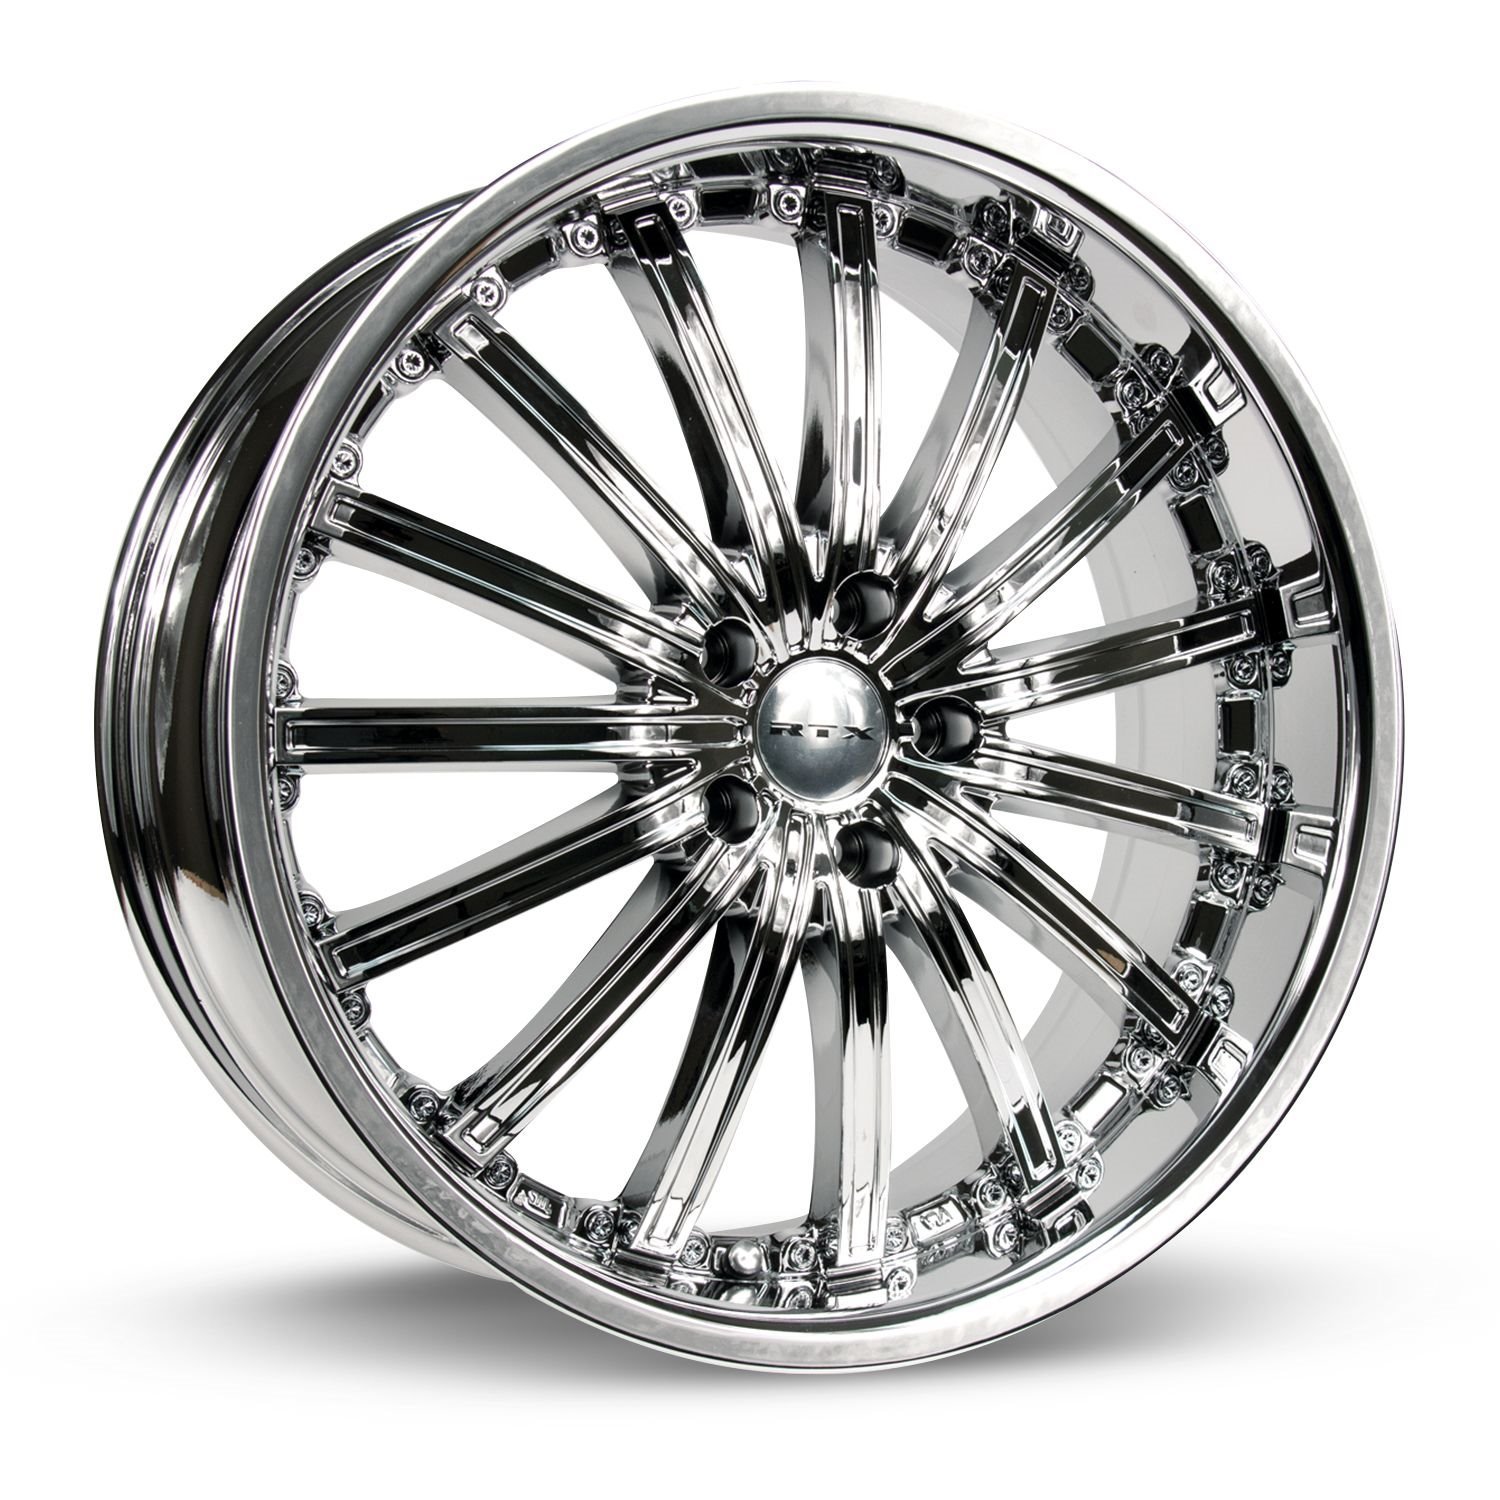 081295 RTX-Series Elite Wheel [Size: 20" x 8.50"] Chrome / PVD Finish